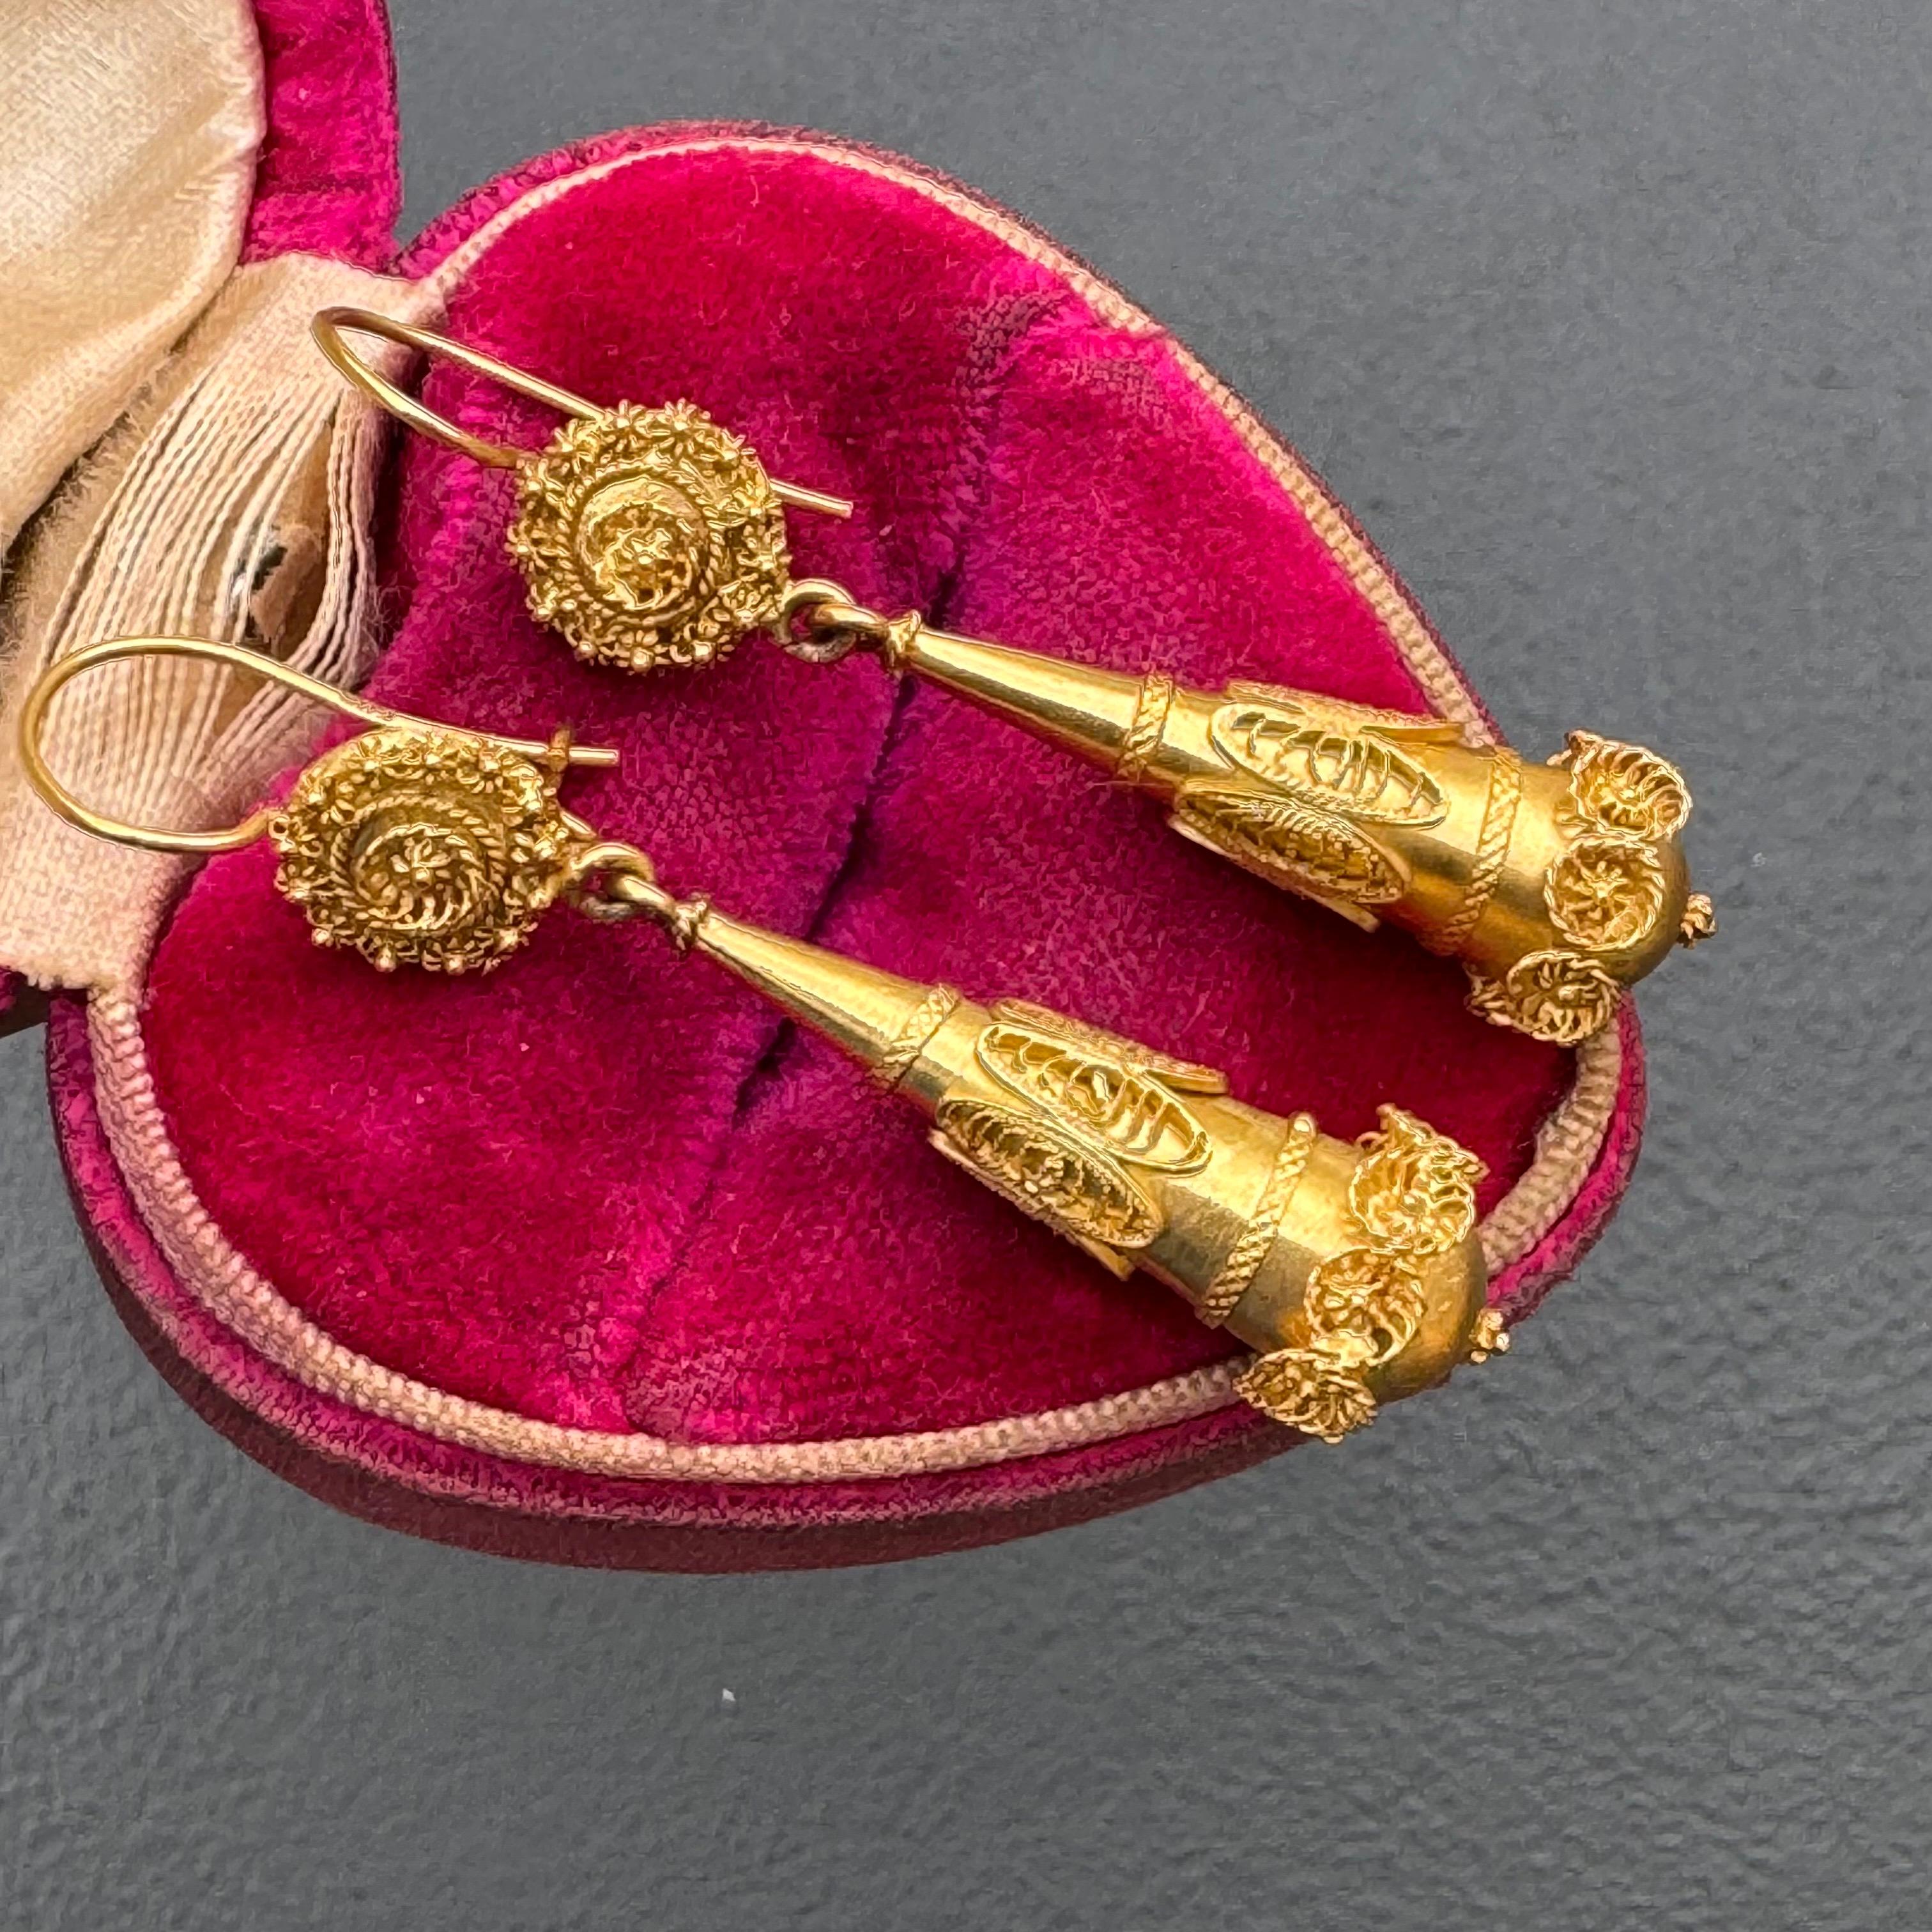 Handgefertigte Torpedo-Ohrringe aus antikem 14-karätigem Gold mit feinen filigranen Verzierungen an hohlen tropfenförmigen Anhängern. Sieht handgemacht aus, mit schönen Details rundherum.

Ende des 19. bis Anfang des 20. Jahrhunderts 
Markiert 585 (